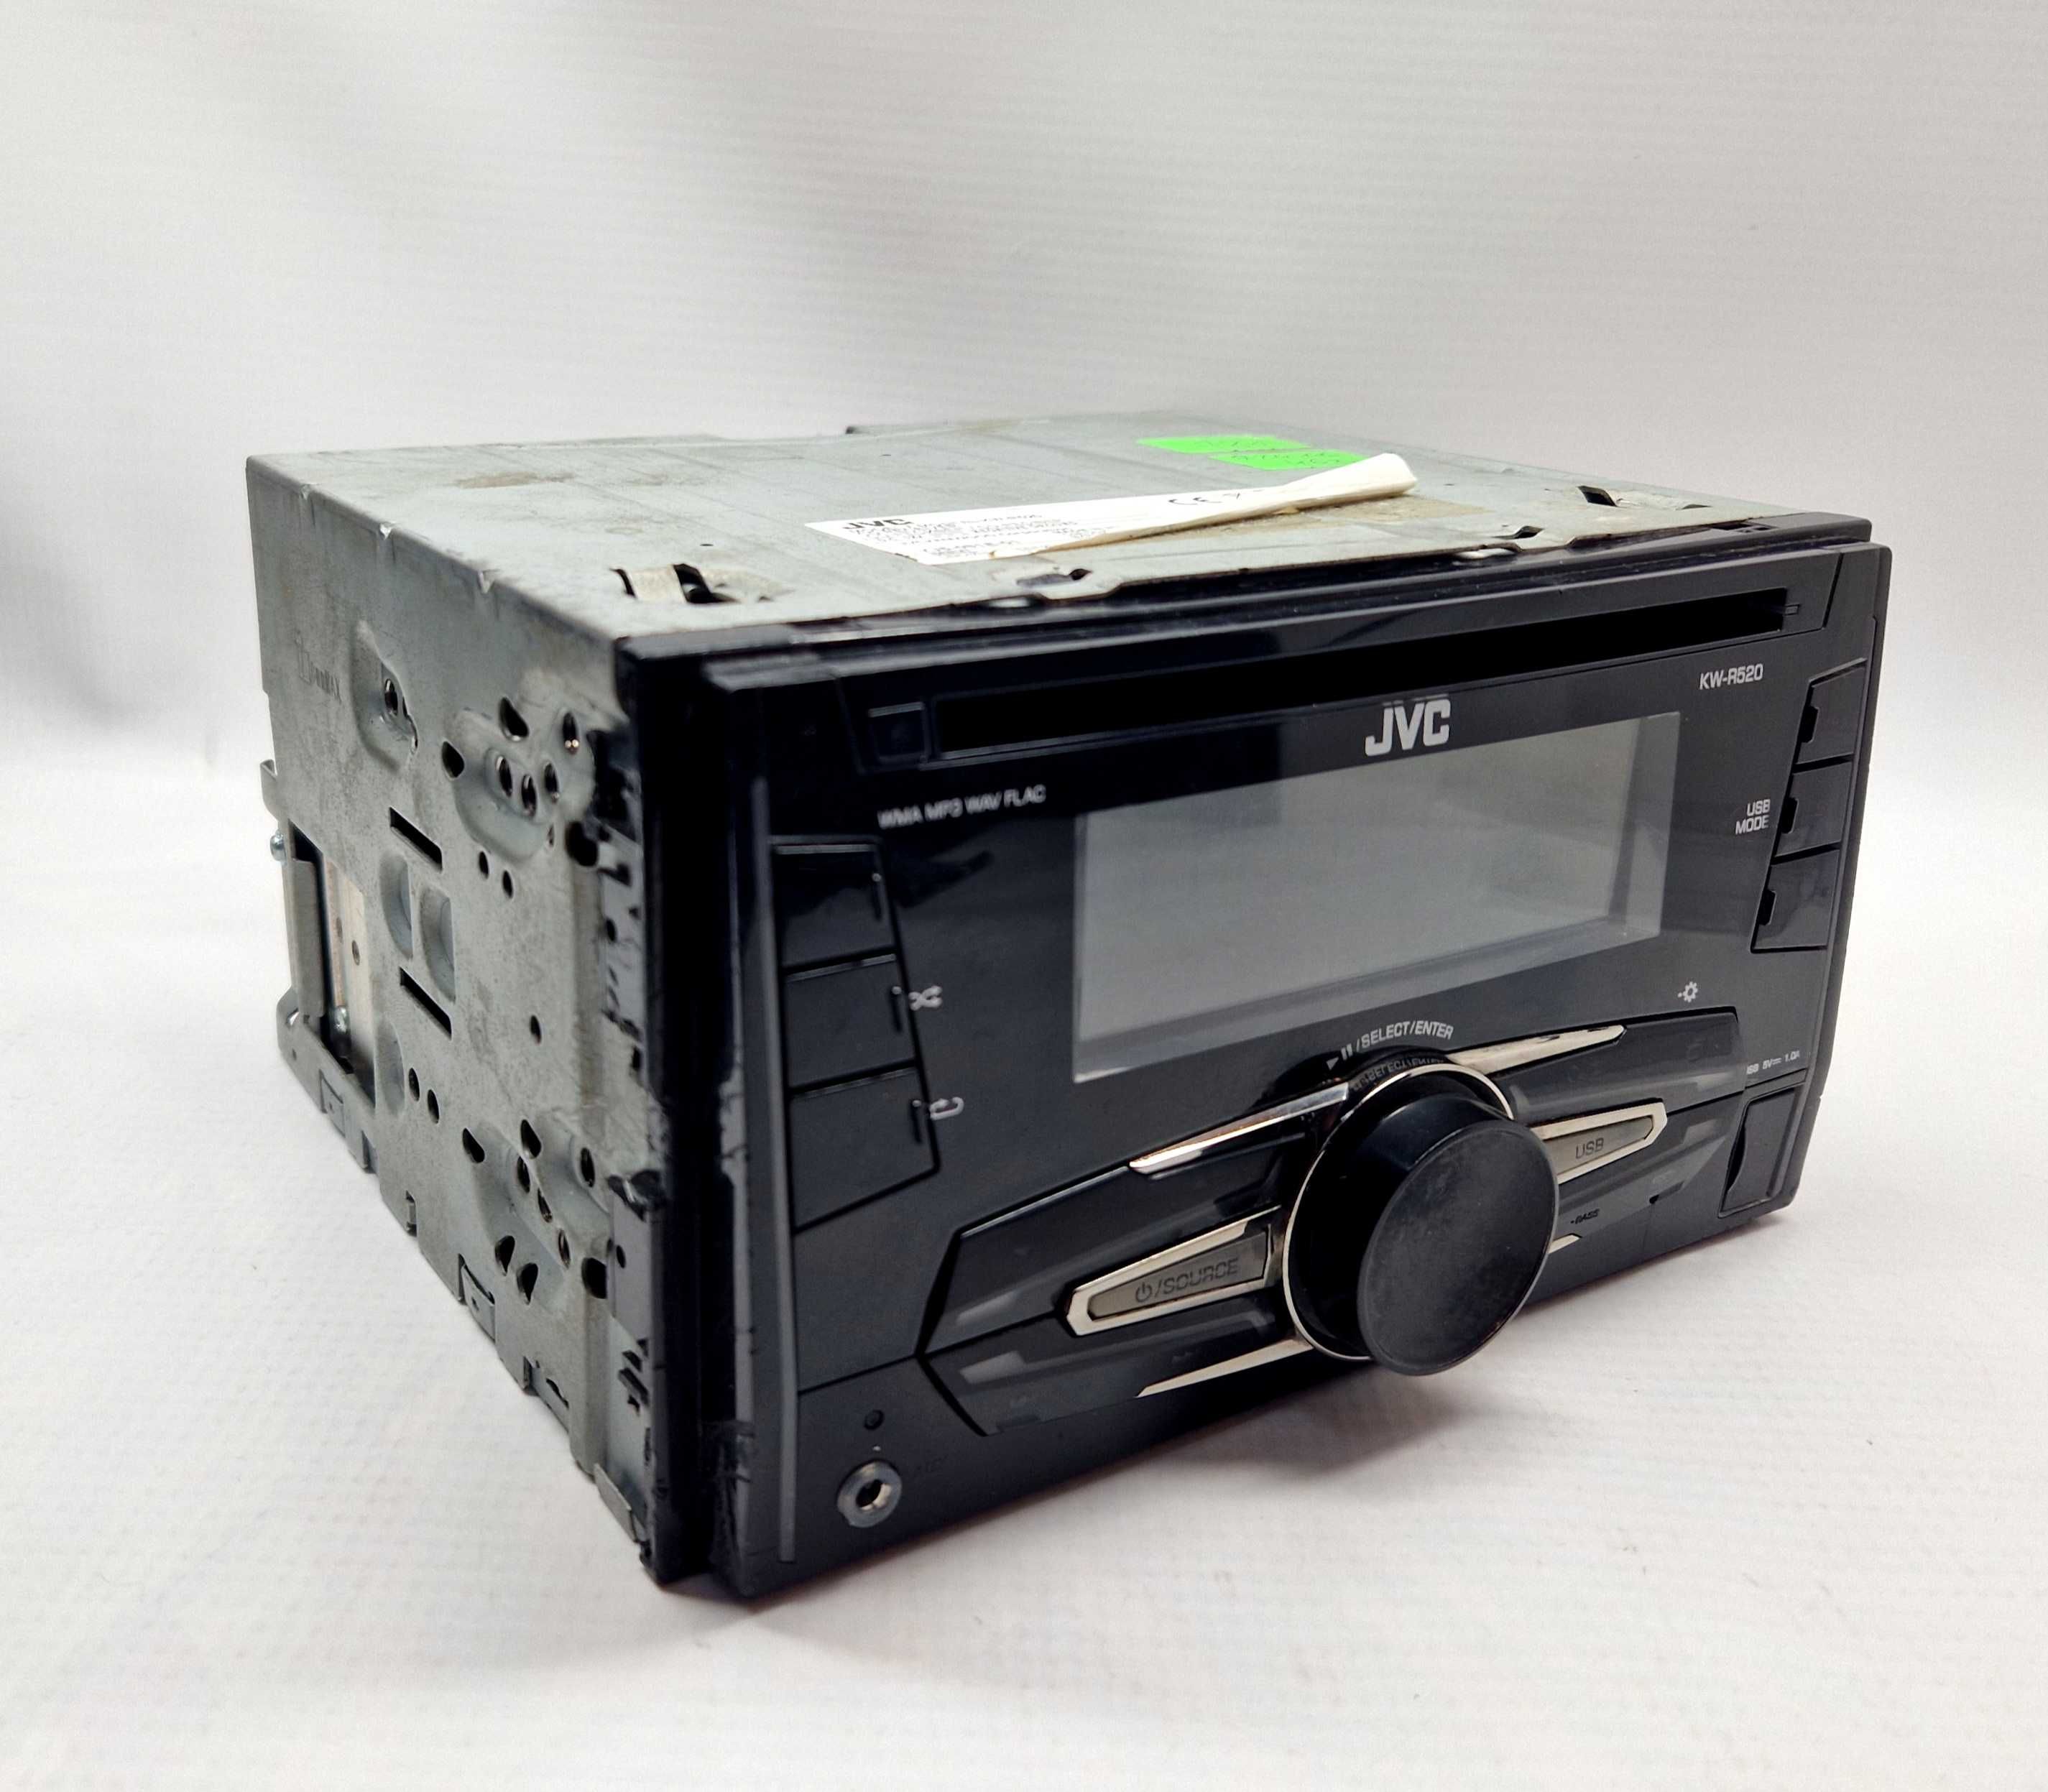 Radio samochodowe JVC KW-R520, USB, AUX, Komis Jasło Czackiego